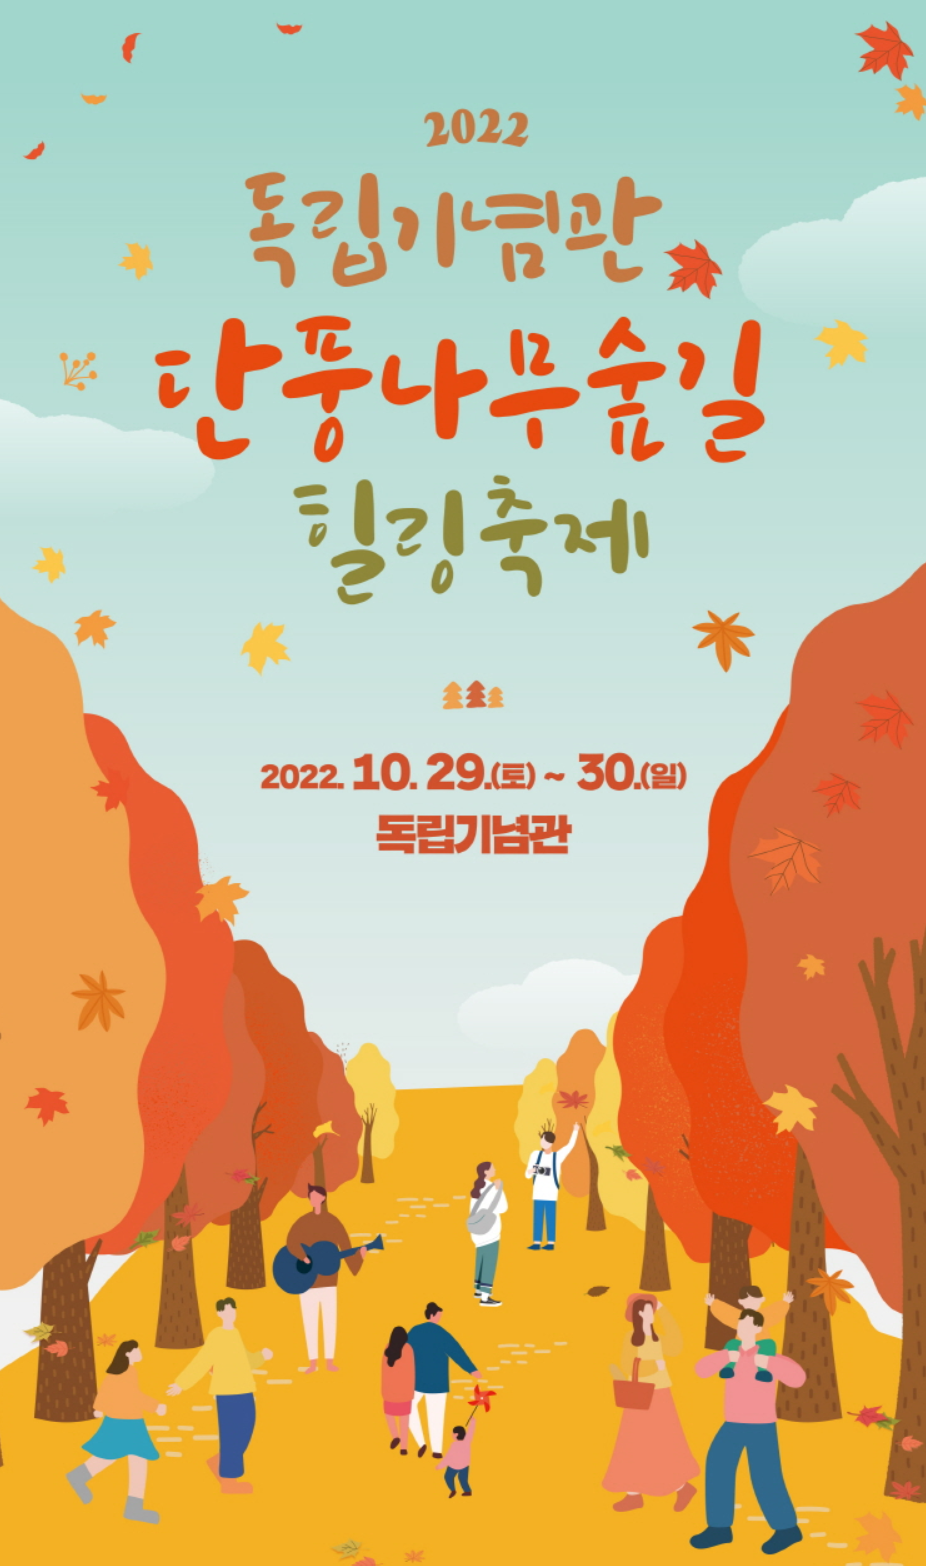 2022 독립기념관 단풍나무숲길 힐링축제 행사 안내 (10/29~30)